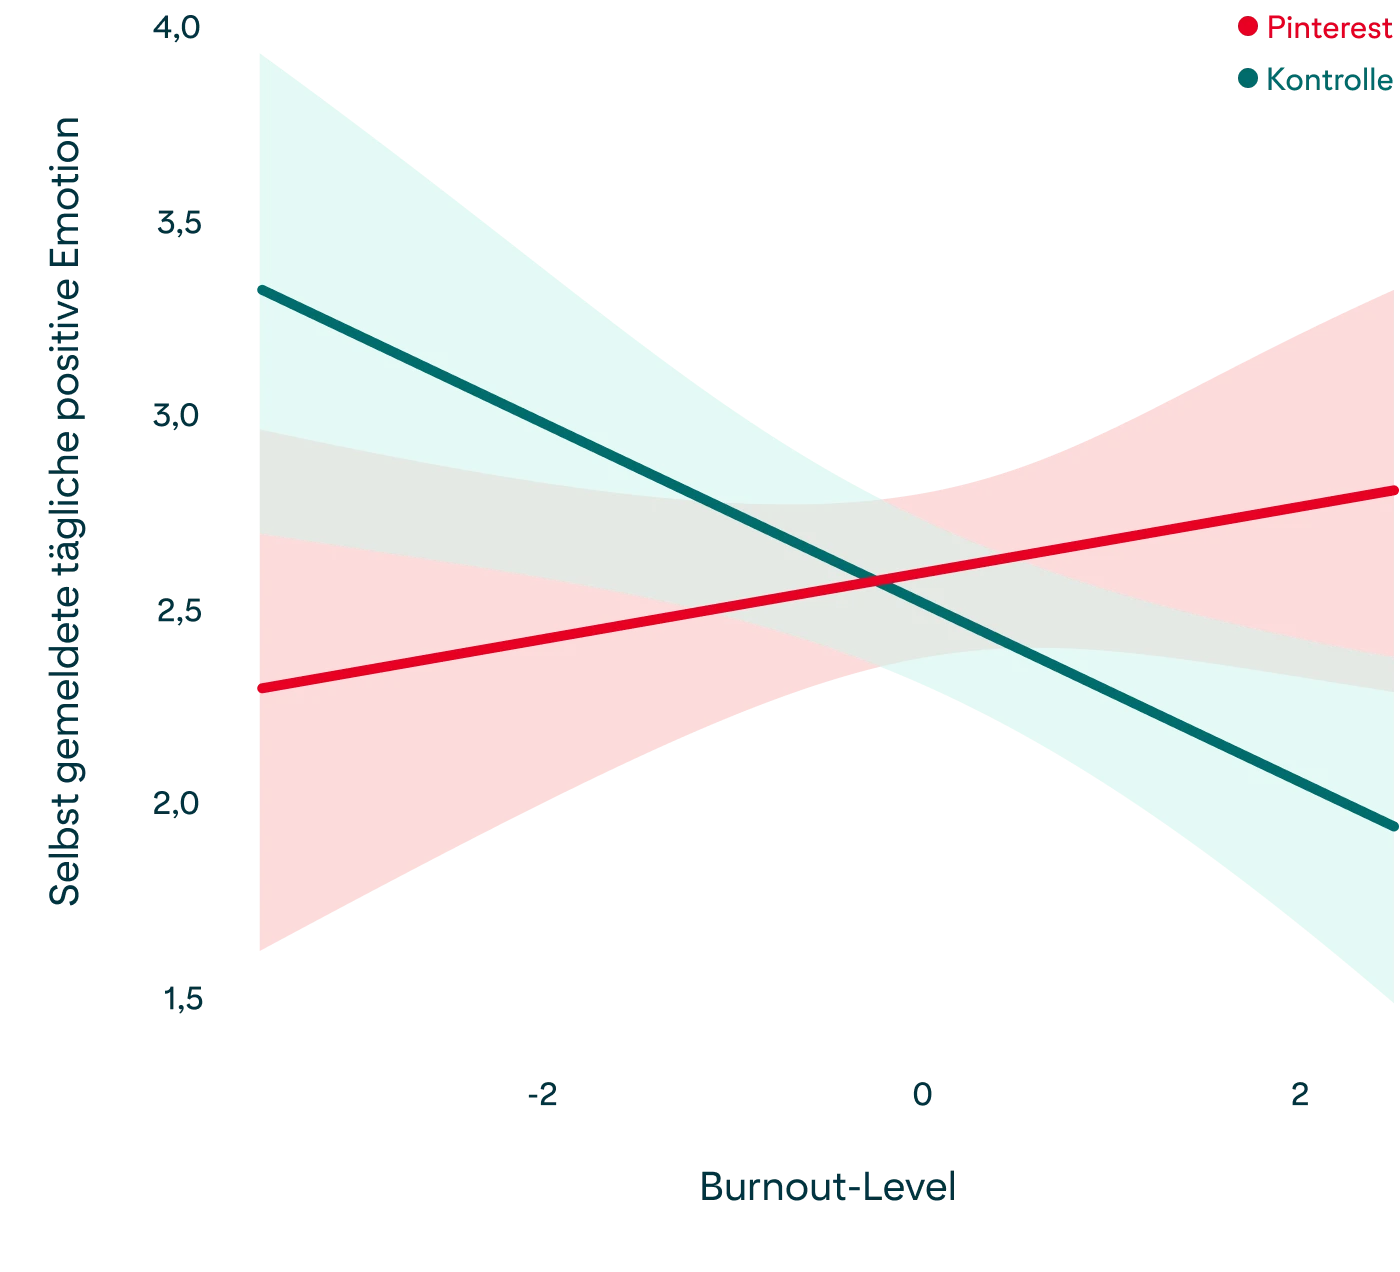  Das Diagramm zeigt die Korrelation von Burnout-Zuständen und subjektiven positiven Emotionen, wie im obigen Abschnitt beschrieben 